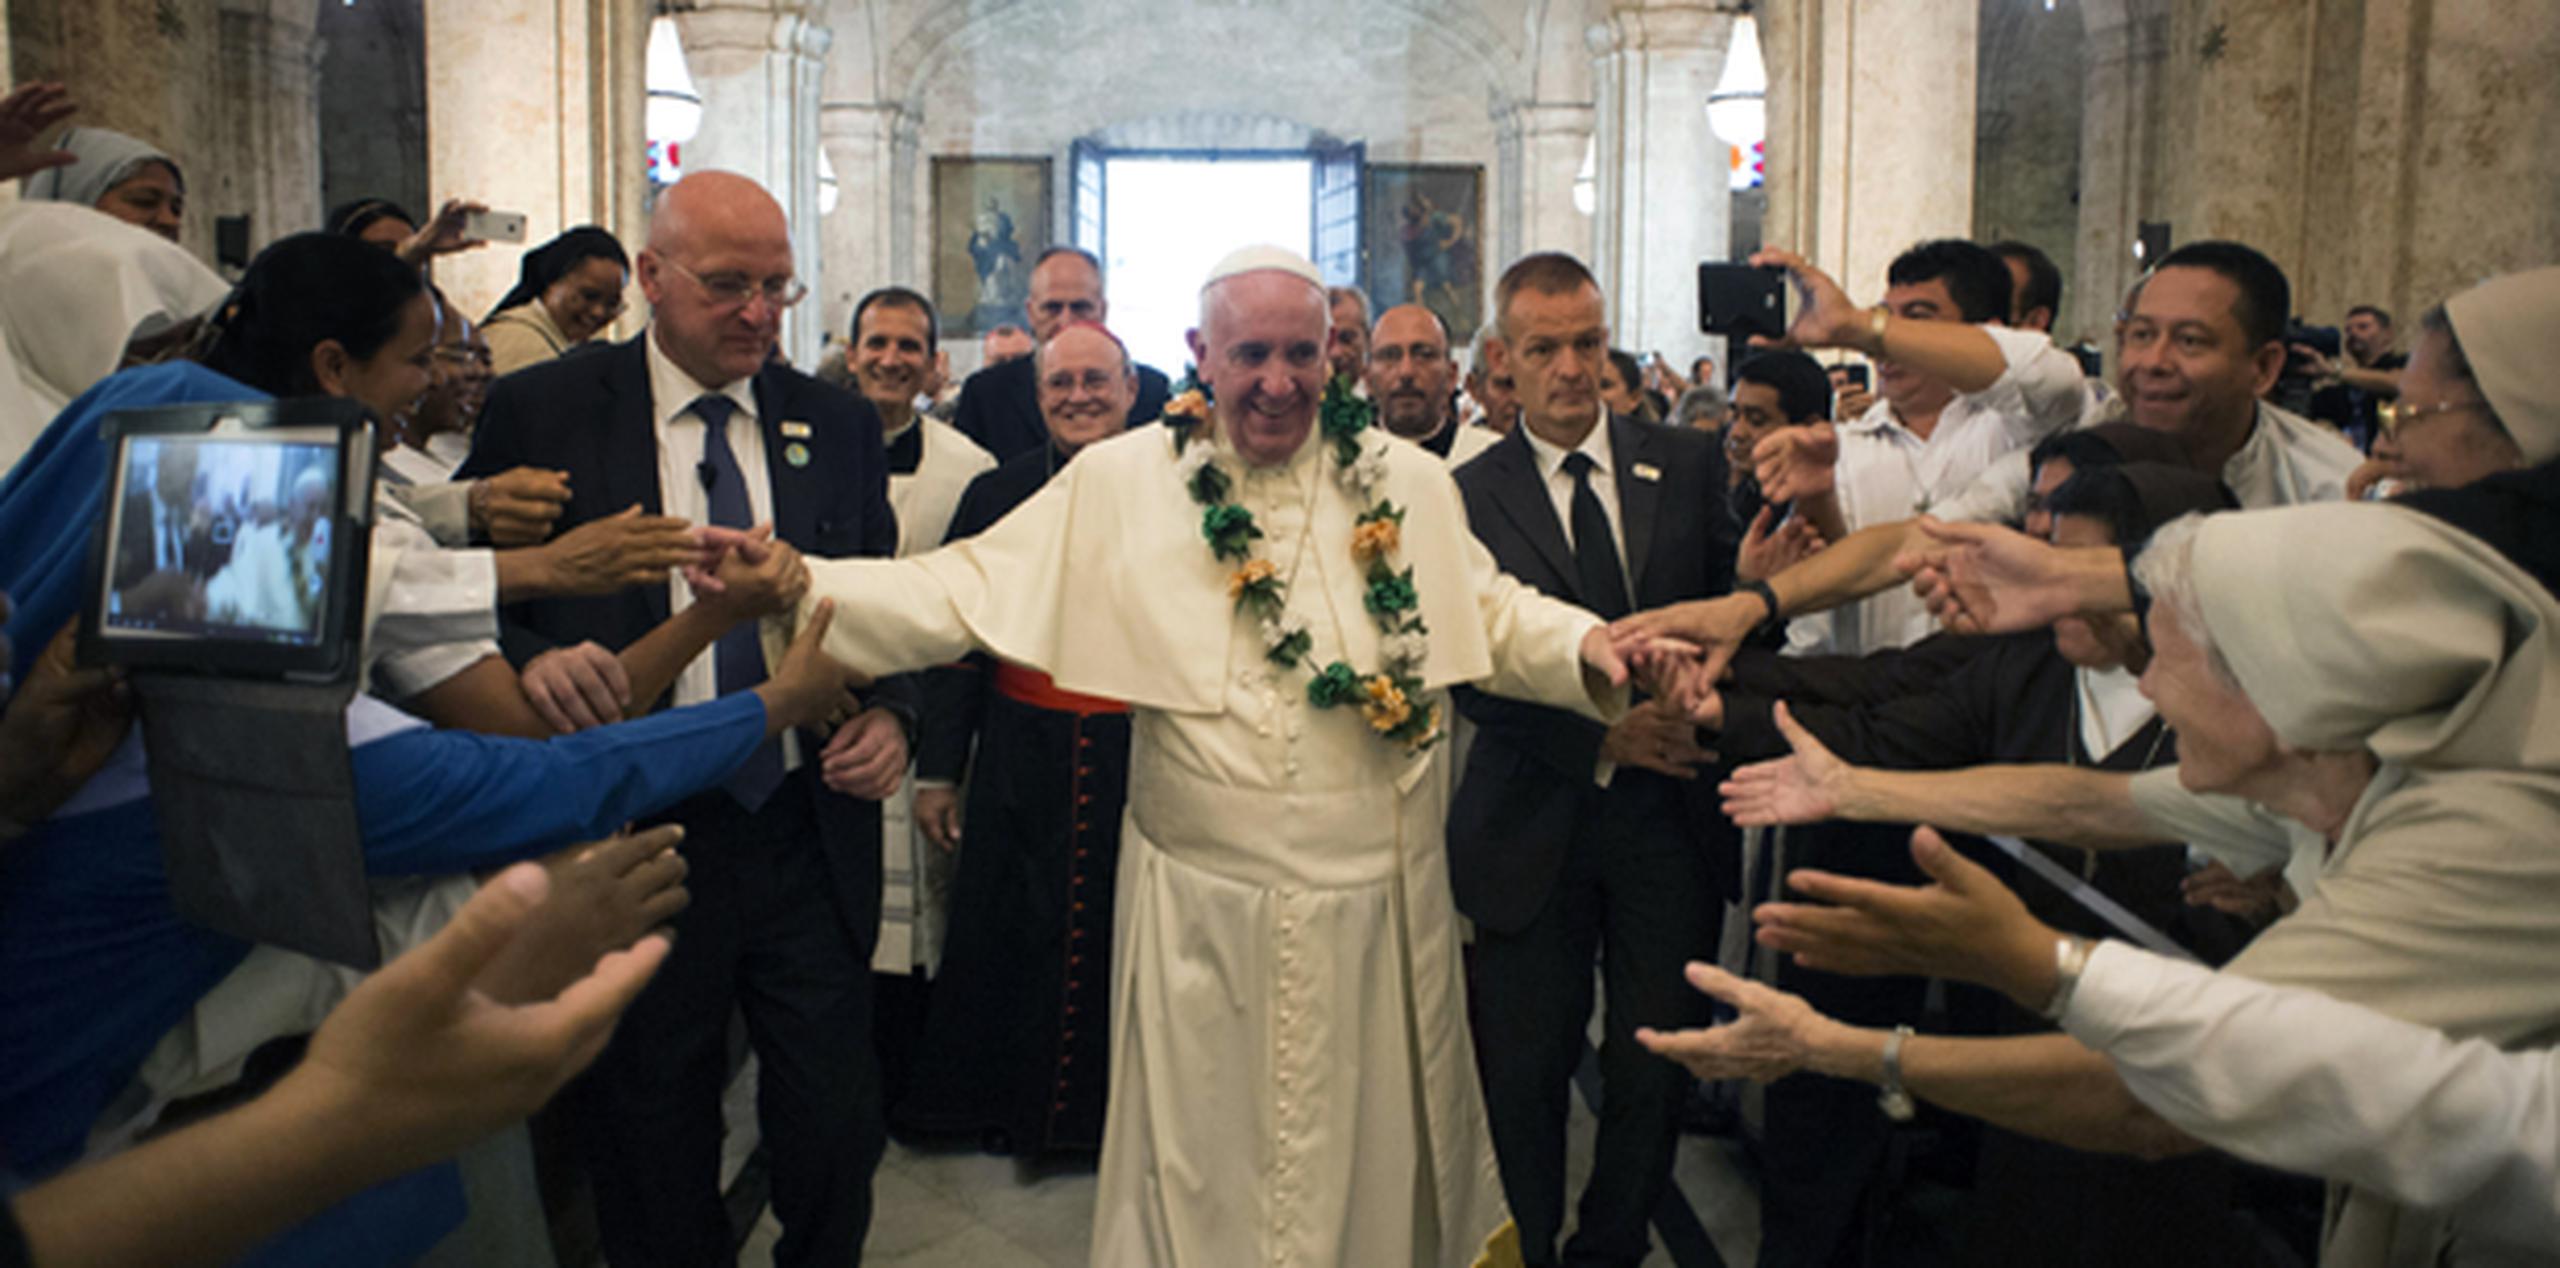 El pontífice saldrá de Santiago a Estados Unidos, como parte de una gira que el Vaticano ha dicho busca construir puentes. (AP)